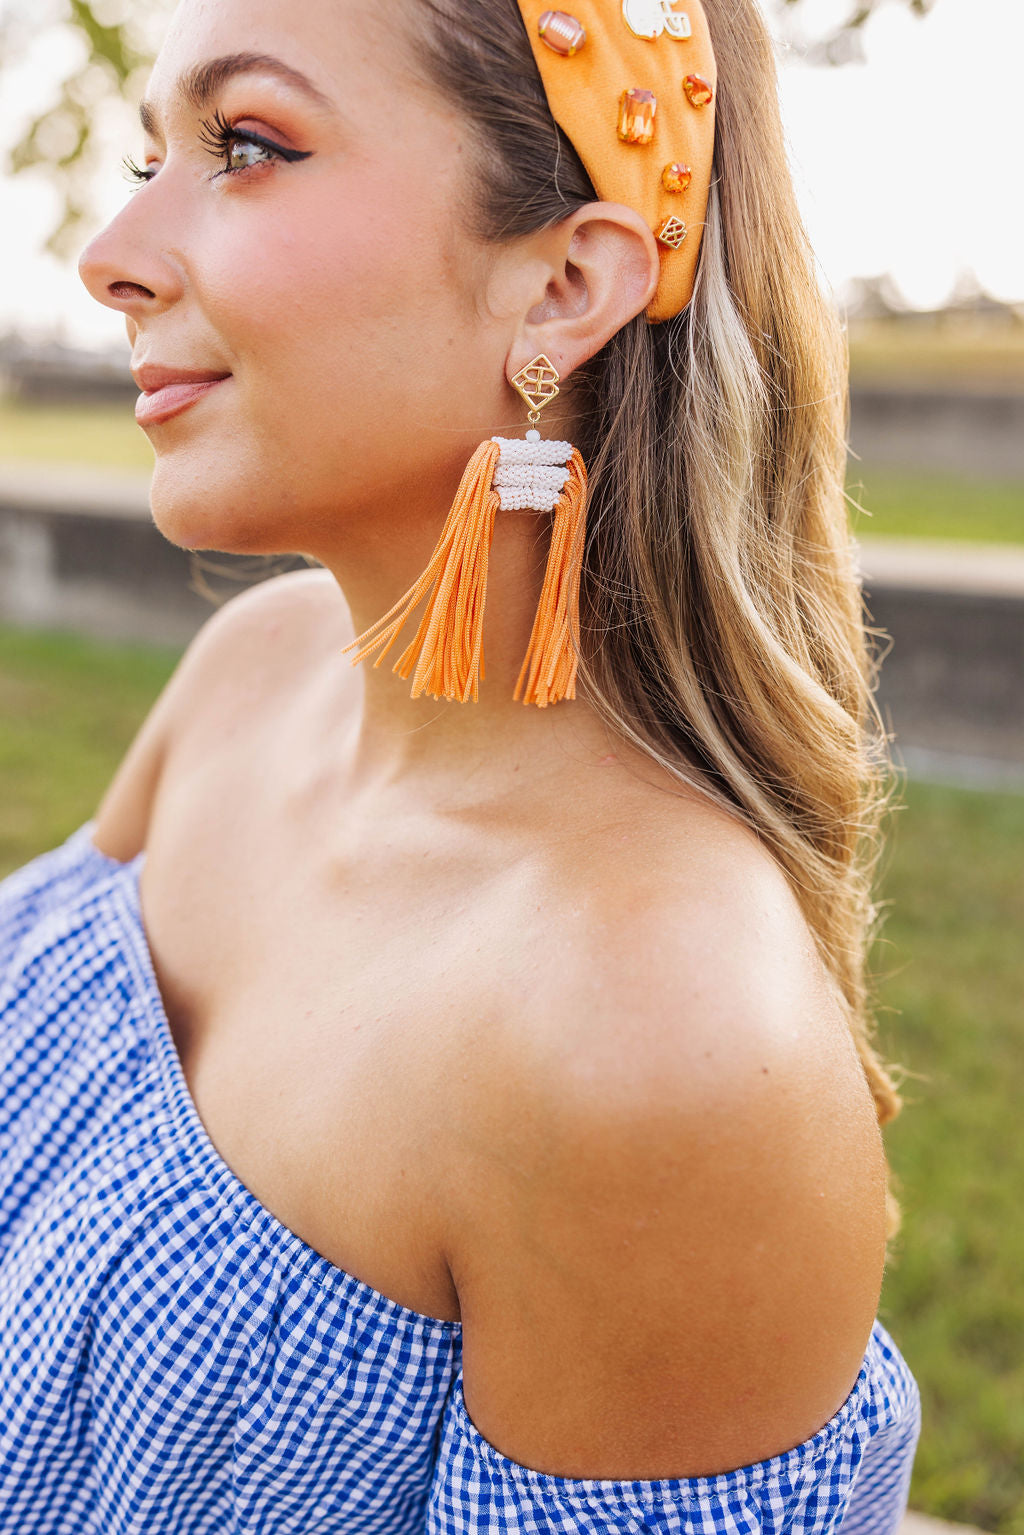 Color Block Tassel Earrings - Orange and White